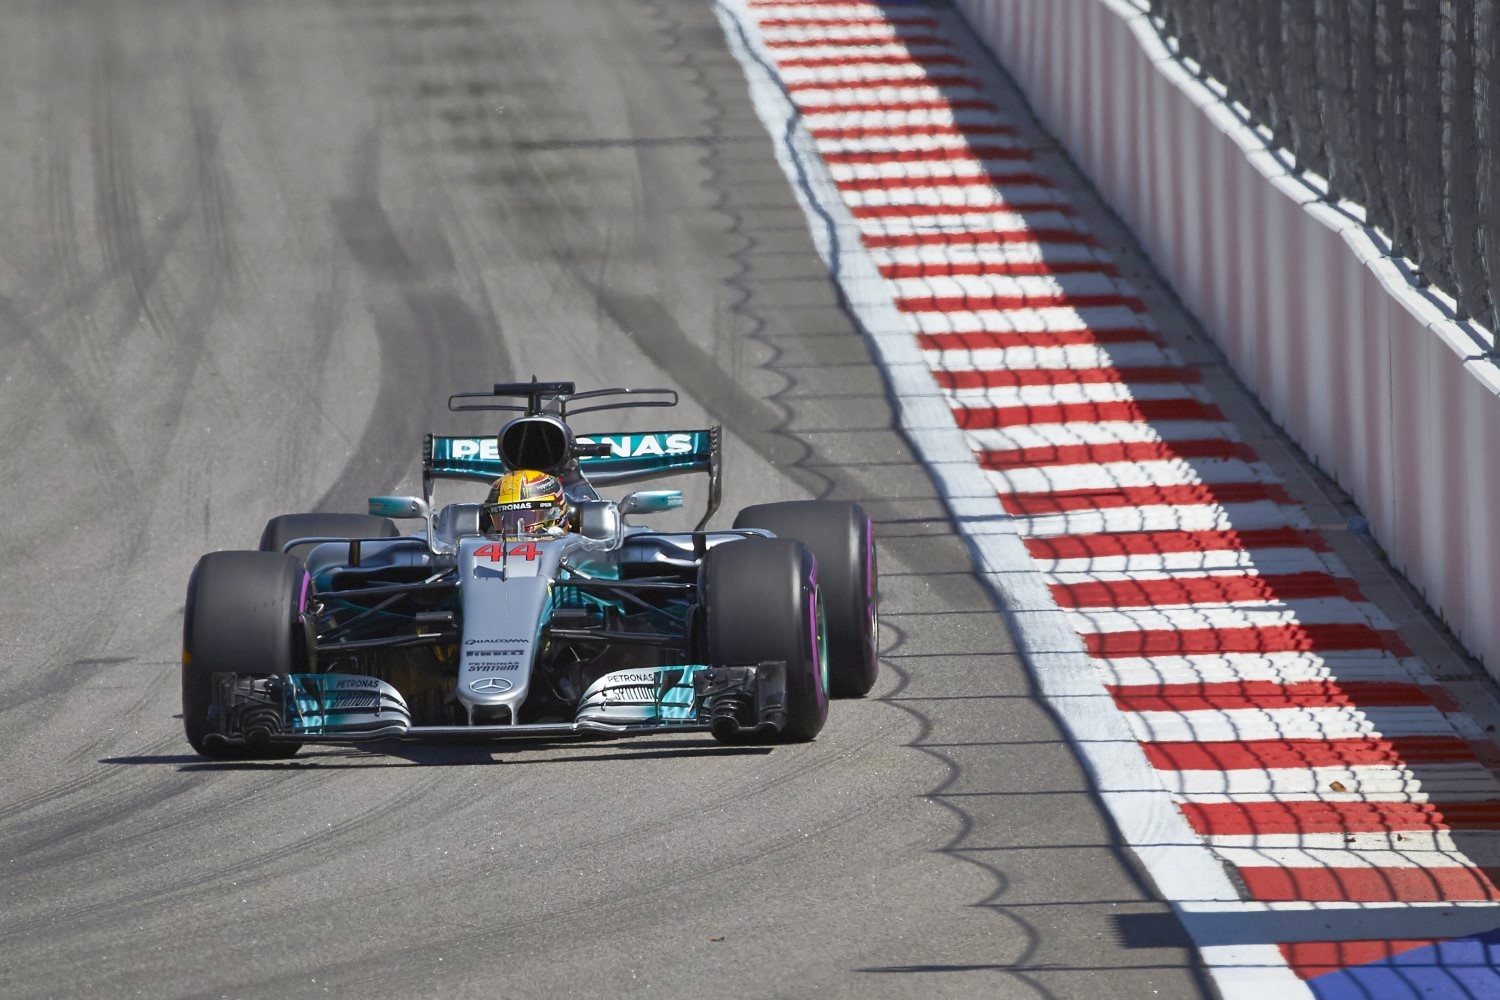 Will Hamilton come good in the race?